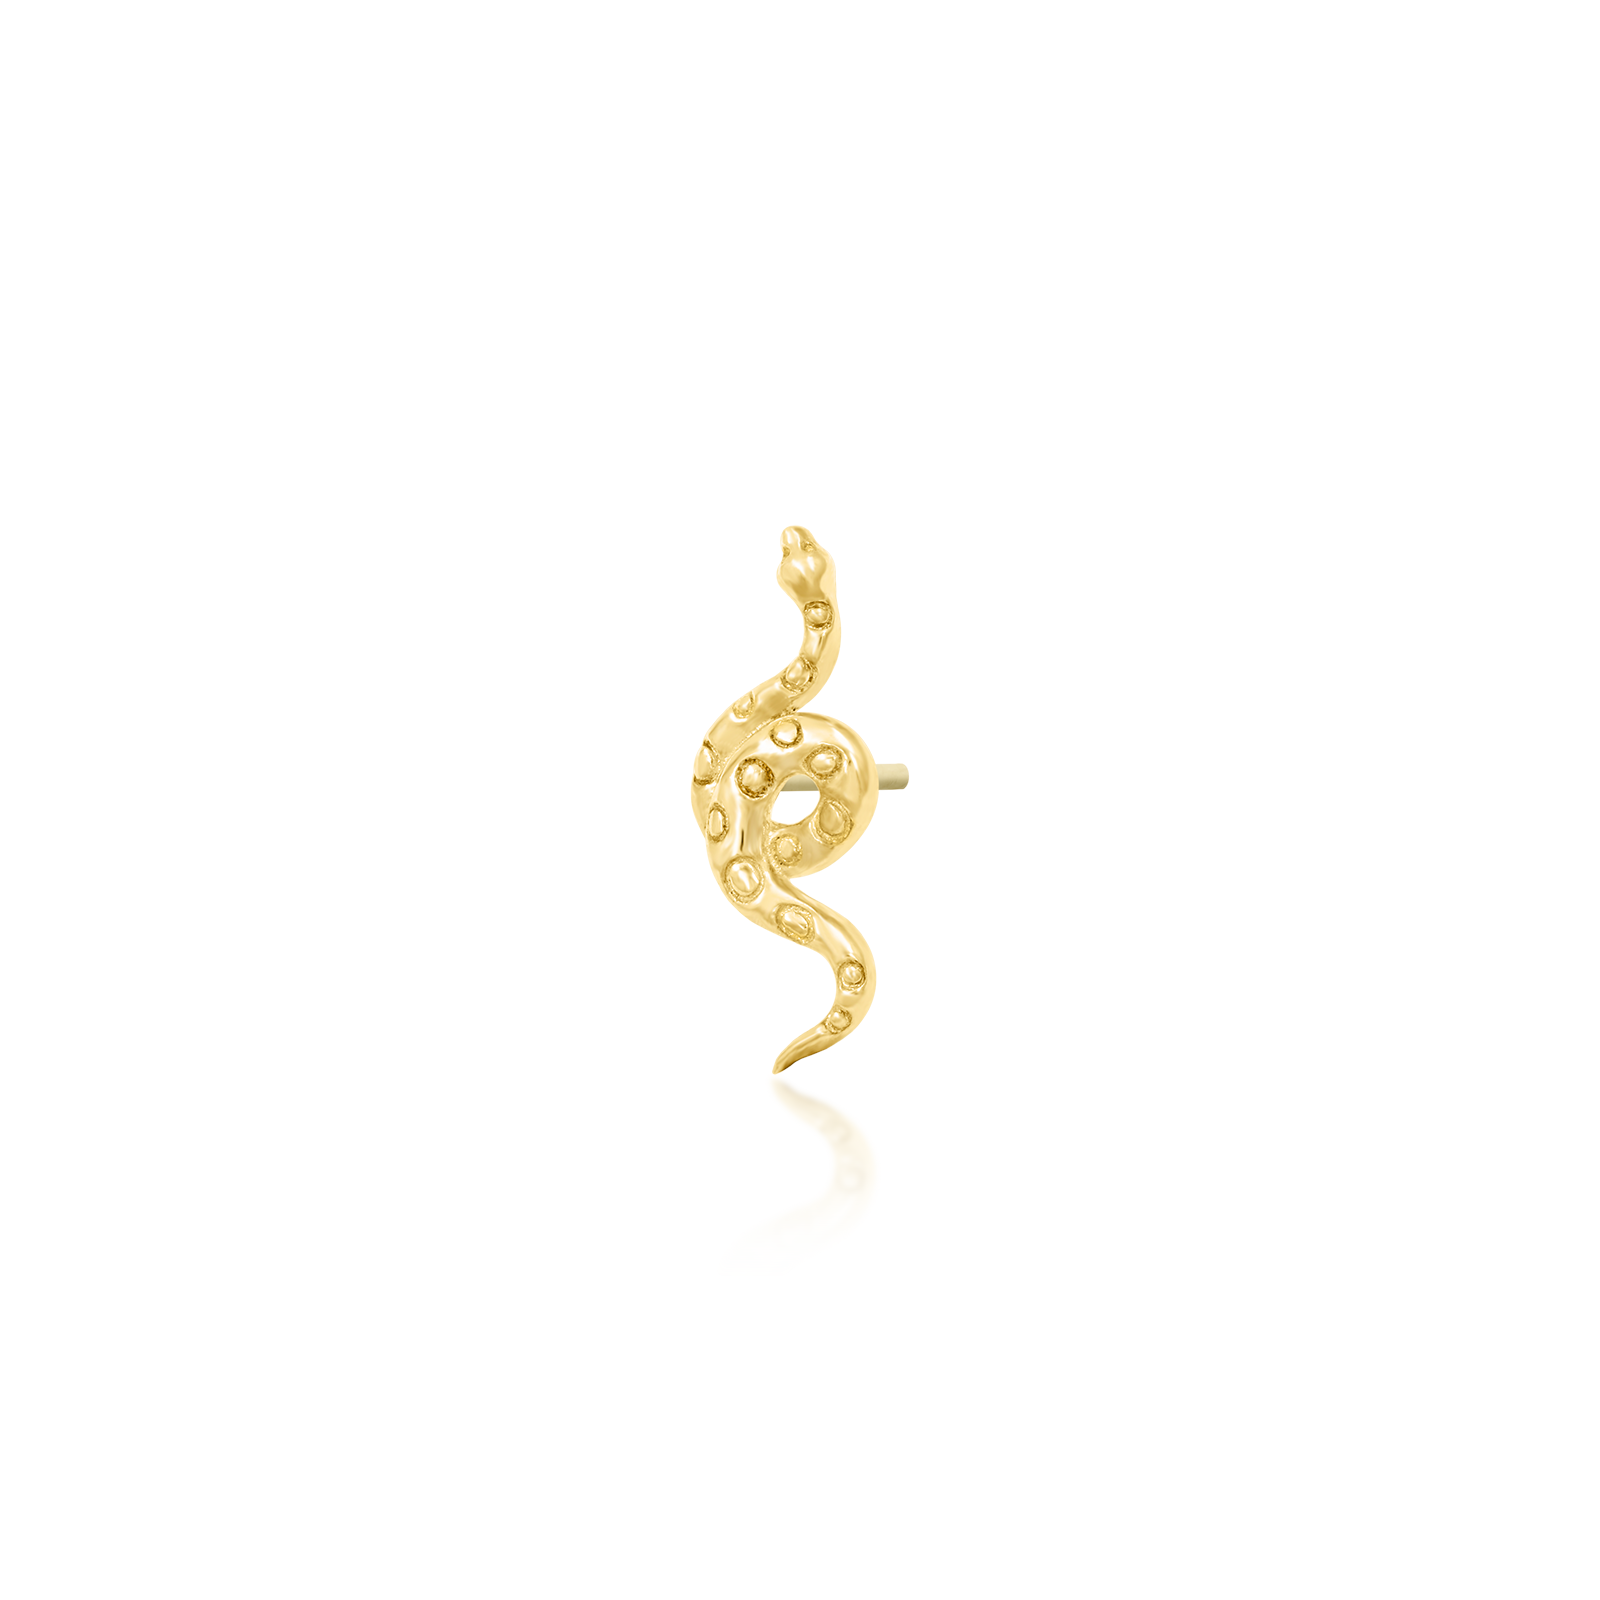 Body Gems: 14K Gold THREADLESS Snake End